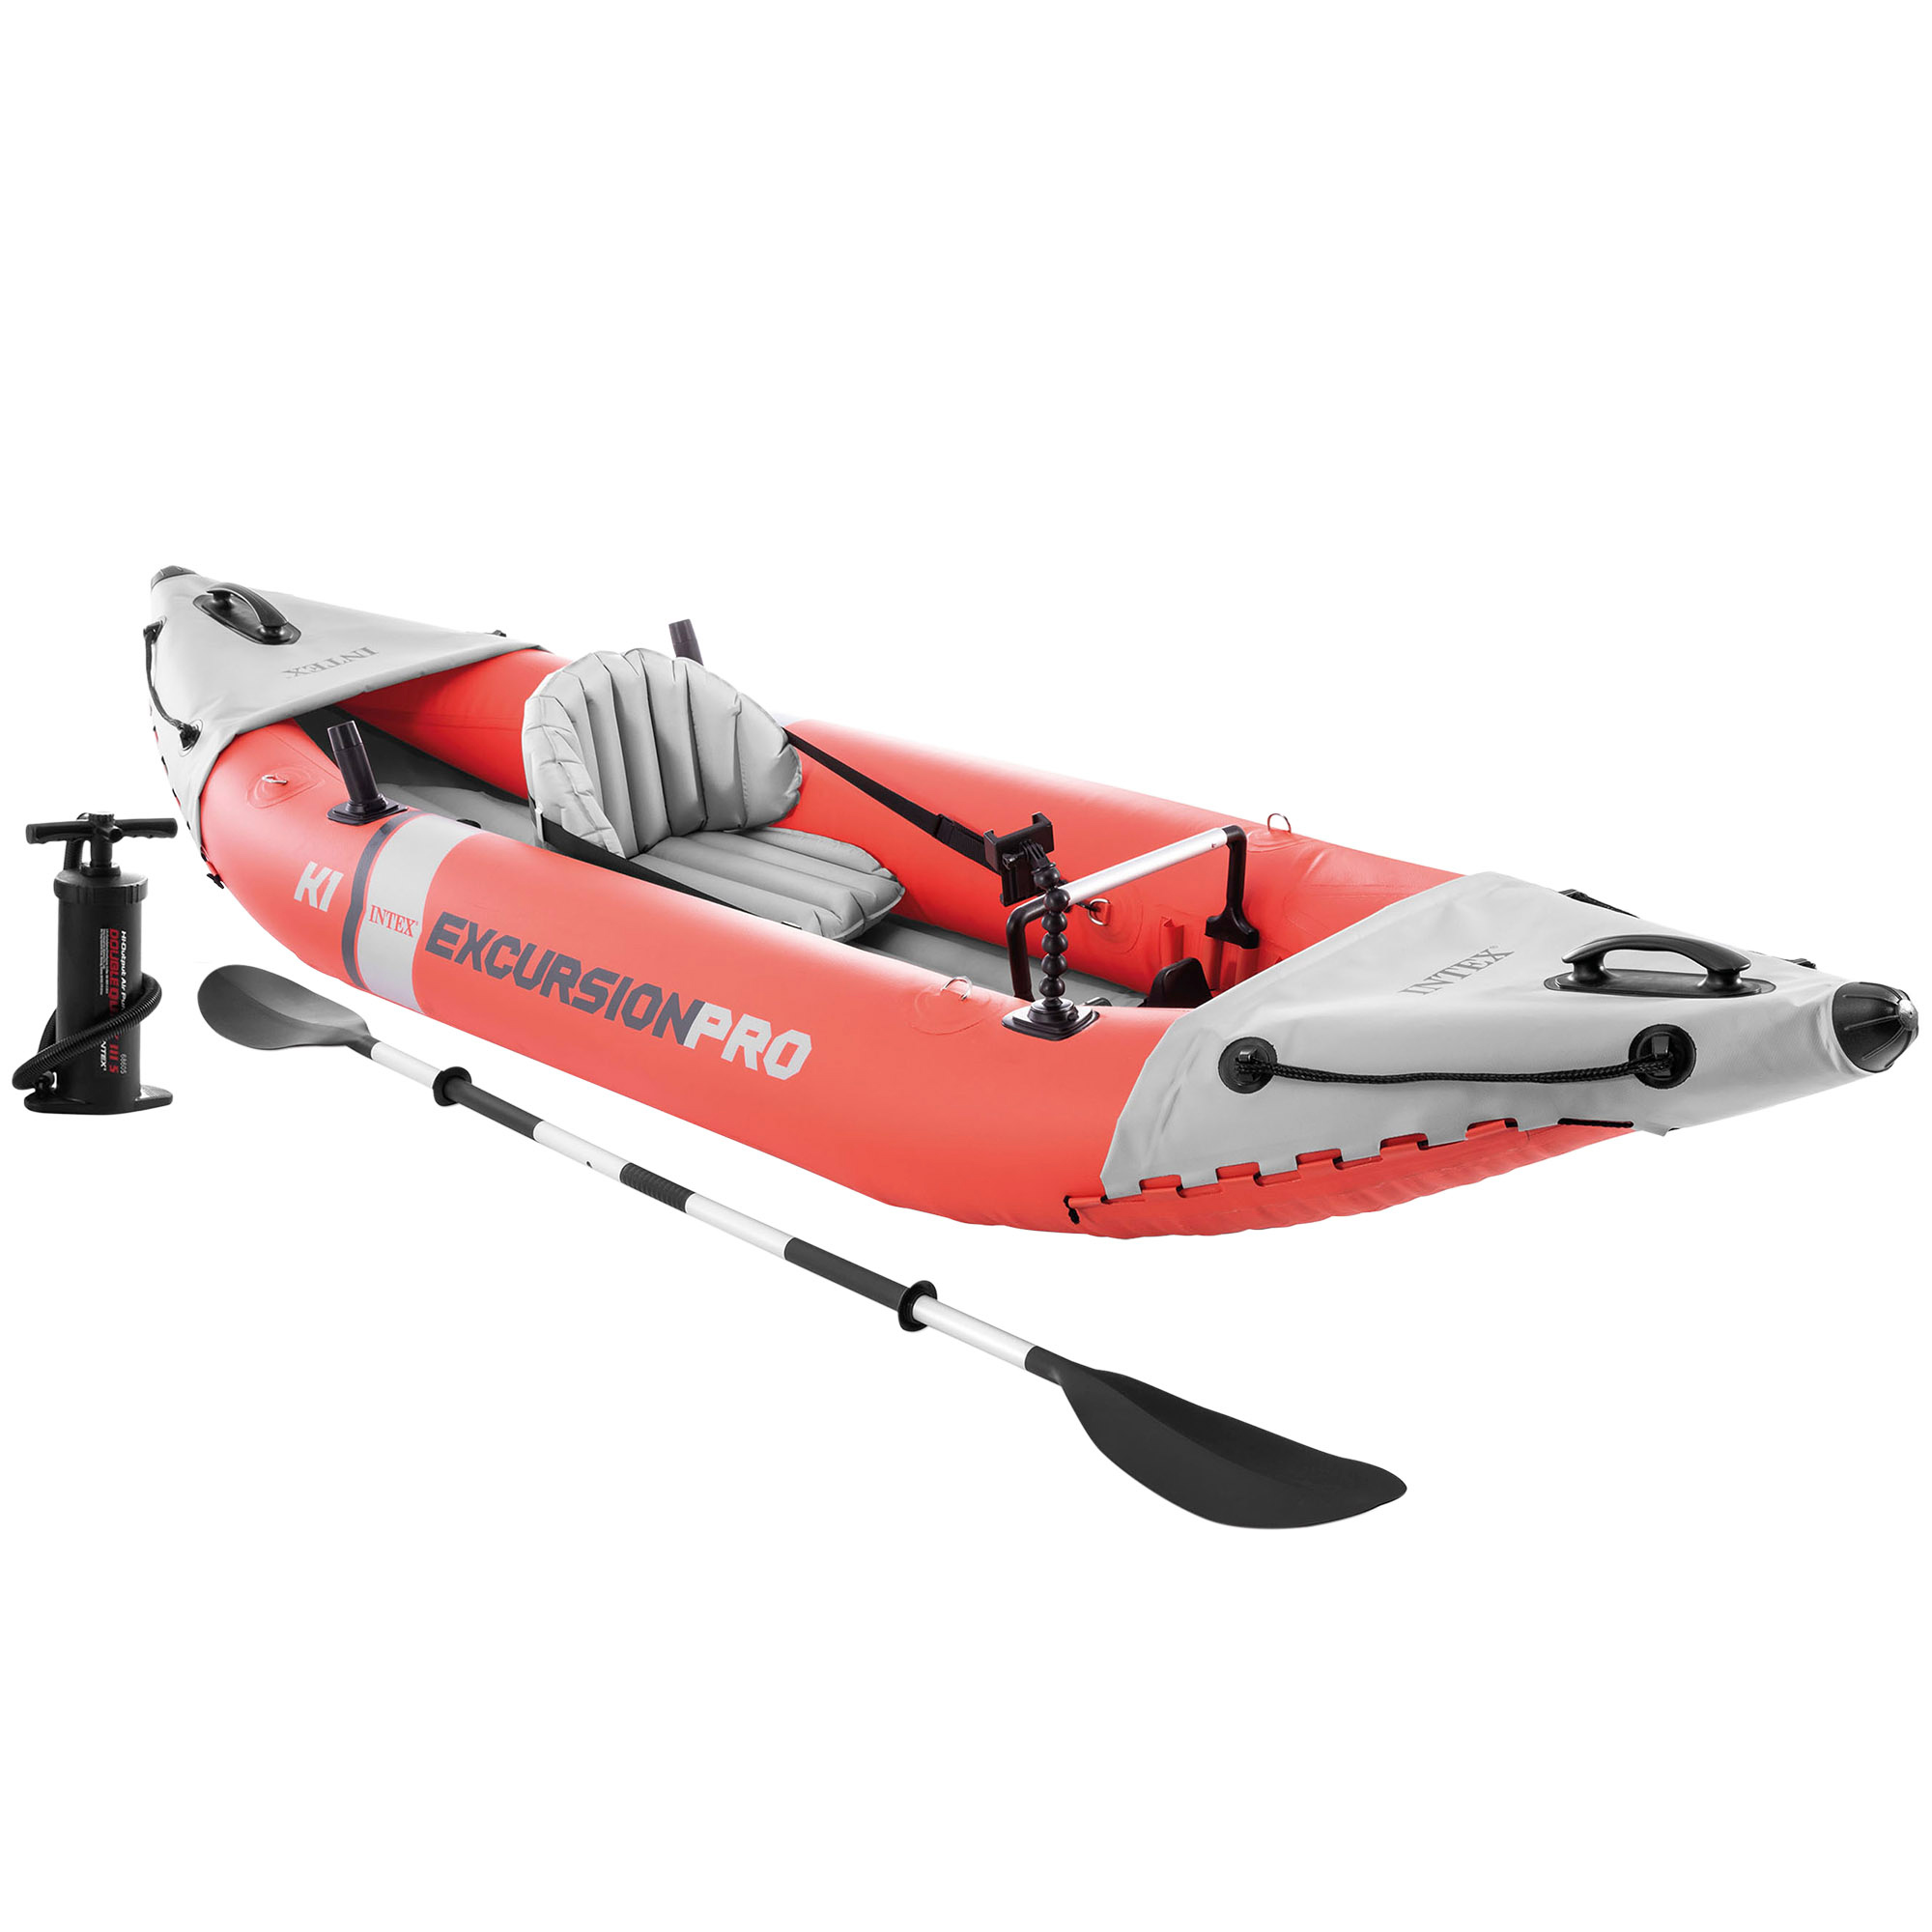 Intex - INTEX - Kayak hinchable Excursion Pro K1 o K2, 1 o 2 personas, de vinilo resistente, con 2 quillas, 2 soportes para caña de pesca, incluye remo e hinchador, asiento, respaldo y suelo hinchables, diseño rojo y gris, con bolsa transporte, kayaks hinchables